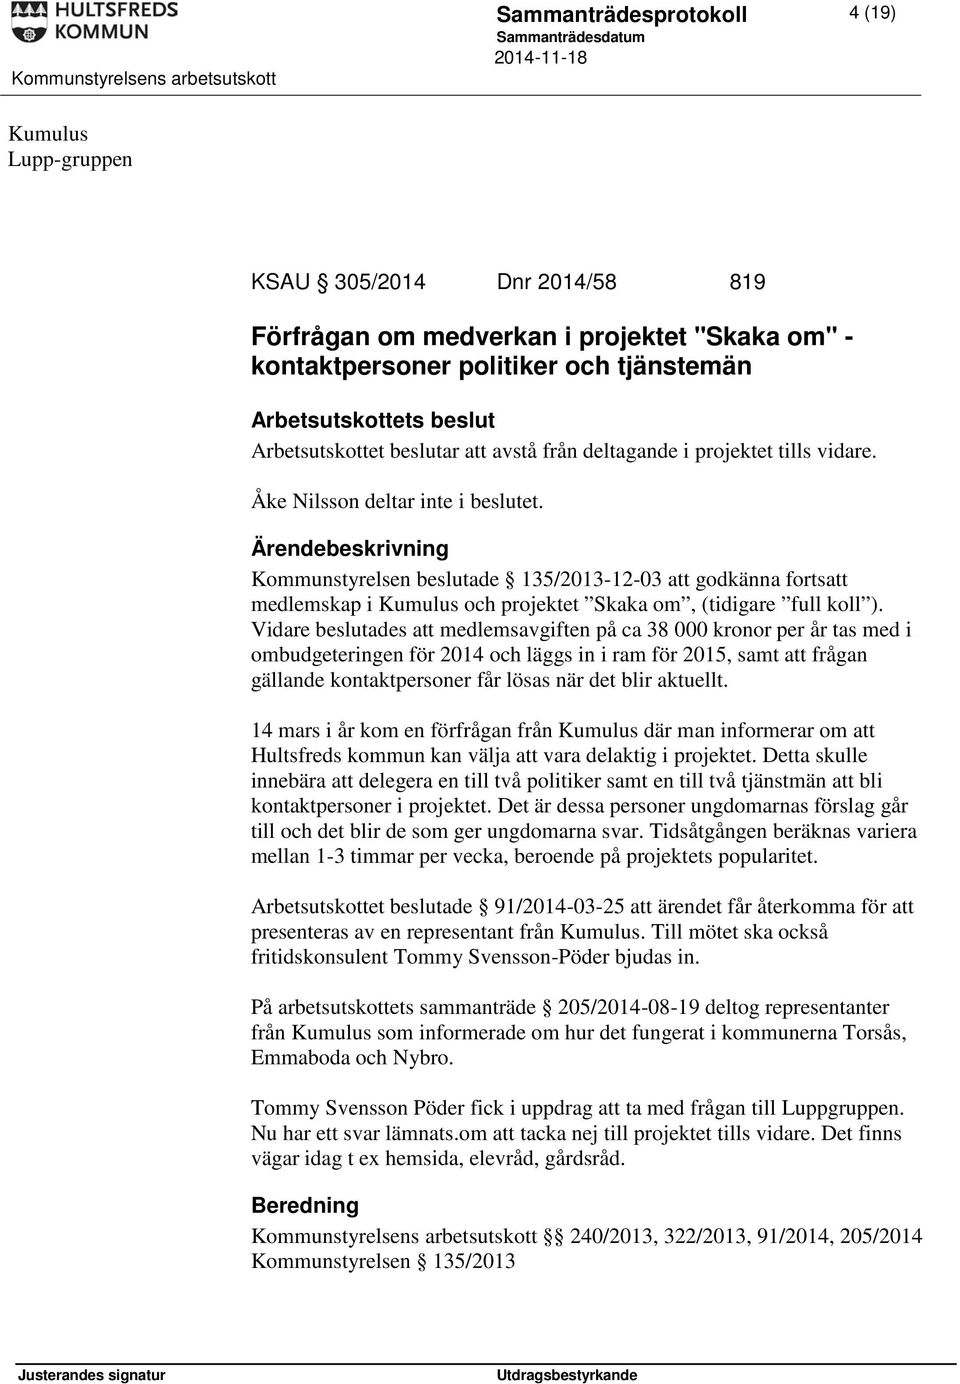 Kommunstyrelsen beslutade 135/2013-12-03 att godkänna fortsatt medlemskap i Kumulus och projektet Skaka om, (tidigare full koll ).